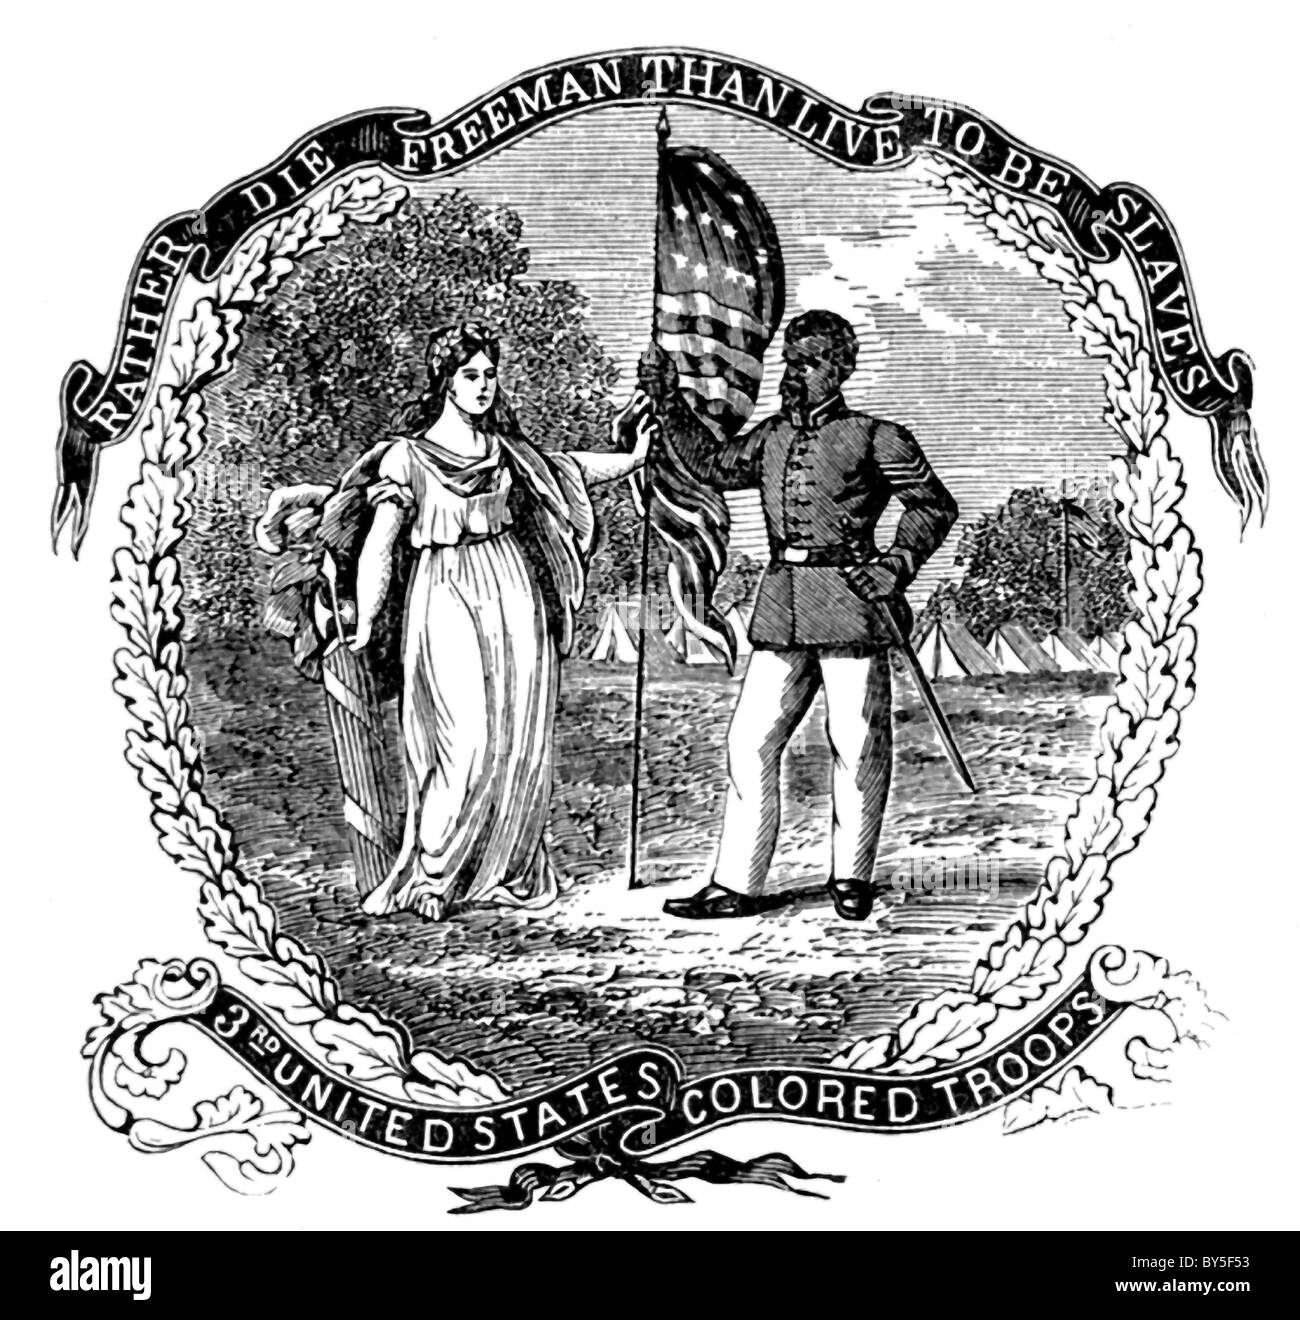 Questa incisione illustra il banner del terzo negli Stati Uniti le truppe colorati che hanno lottato per l'Unione nella guerra civile. Foto Stock